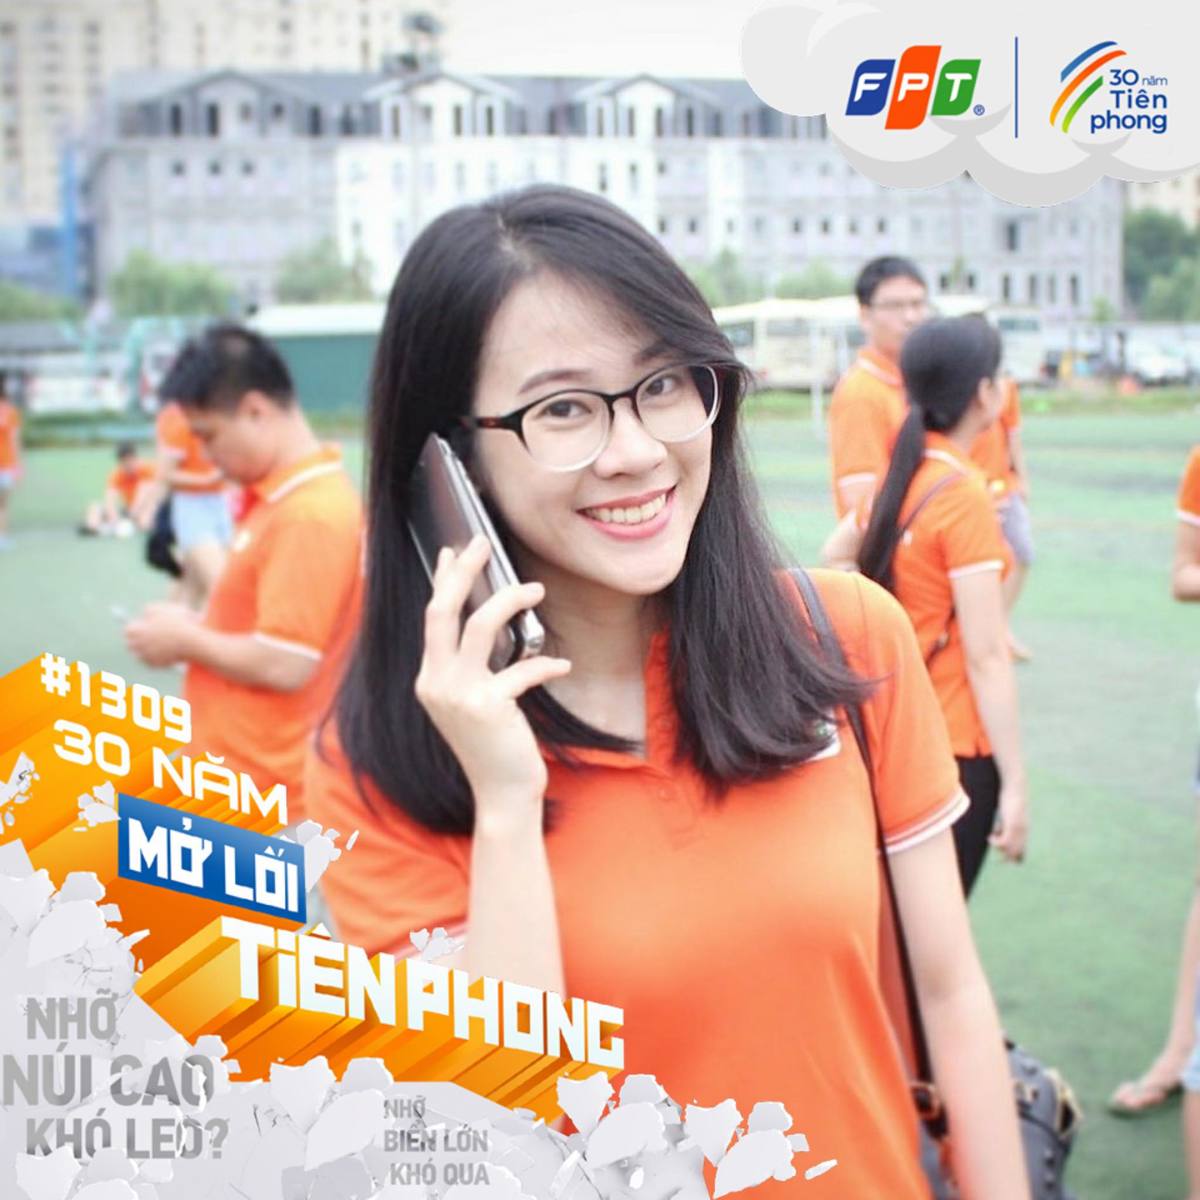 <p> Nguyễn Kim Anh, FPT IS, rạng rỡ khi diện áo cam.</p>